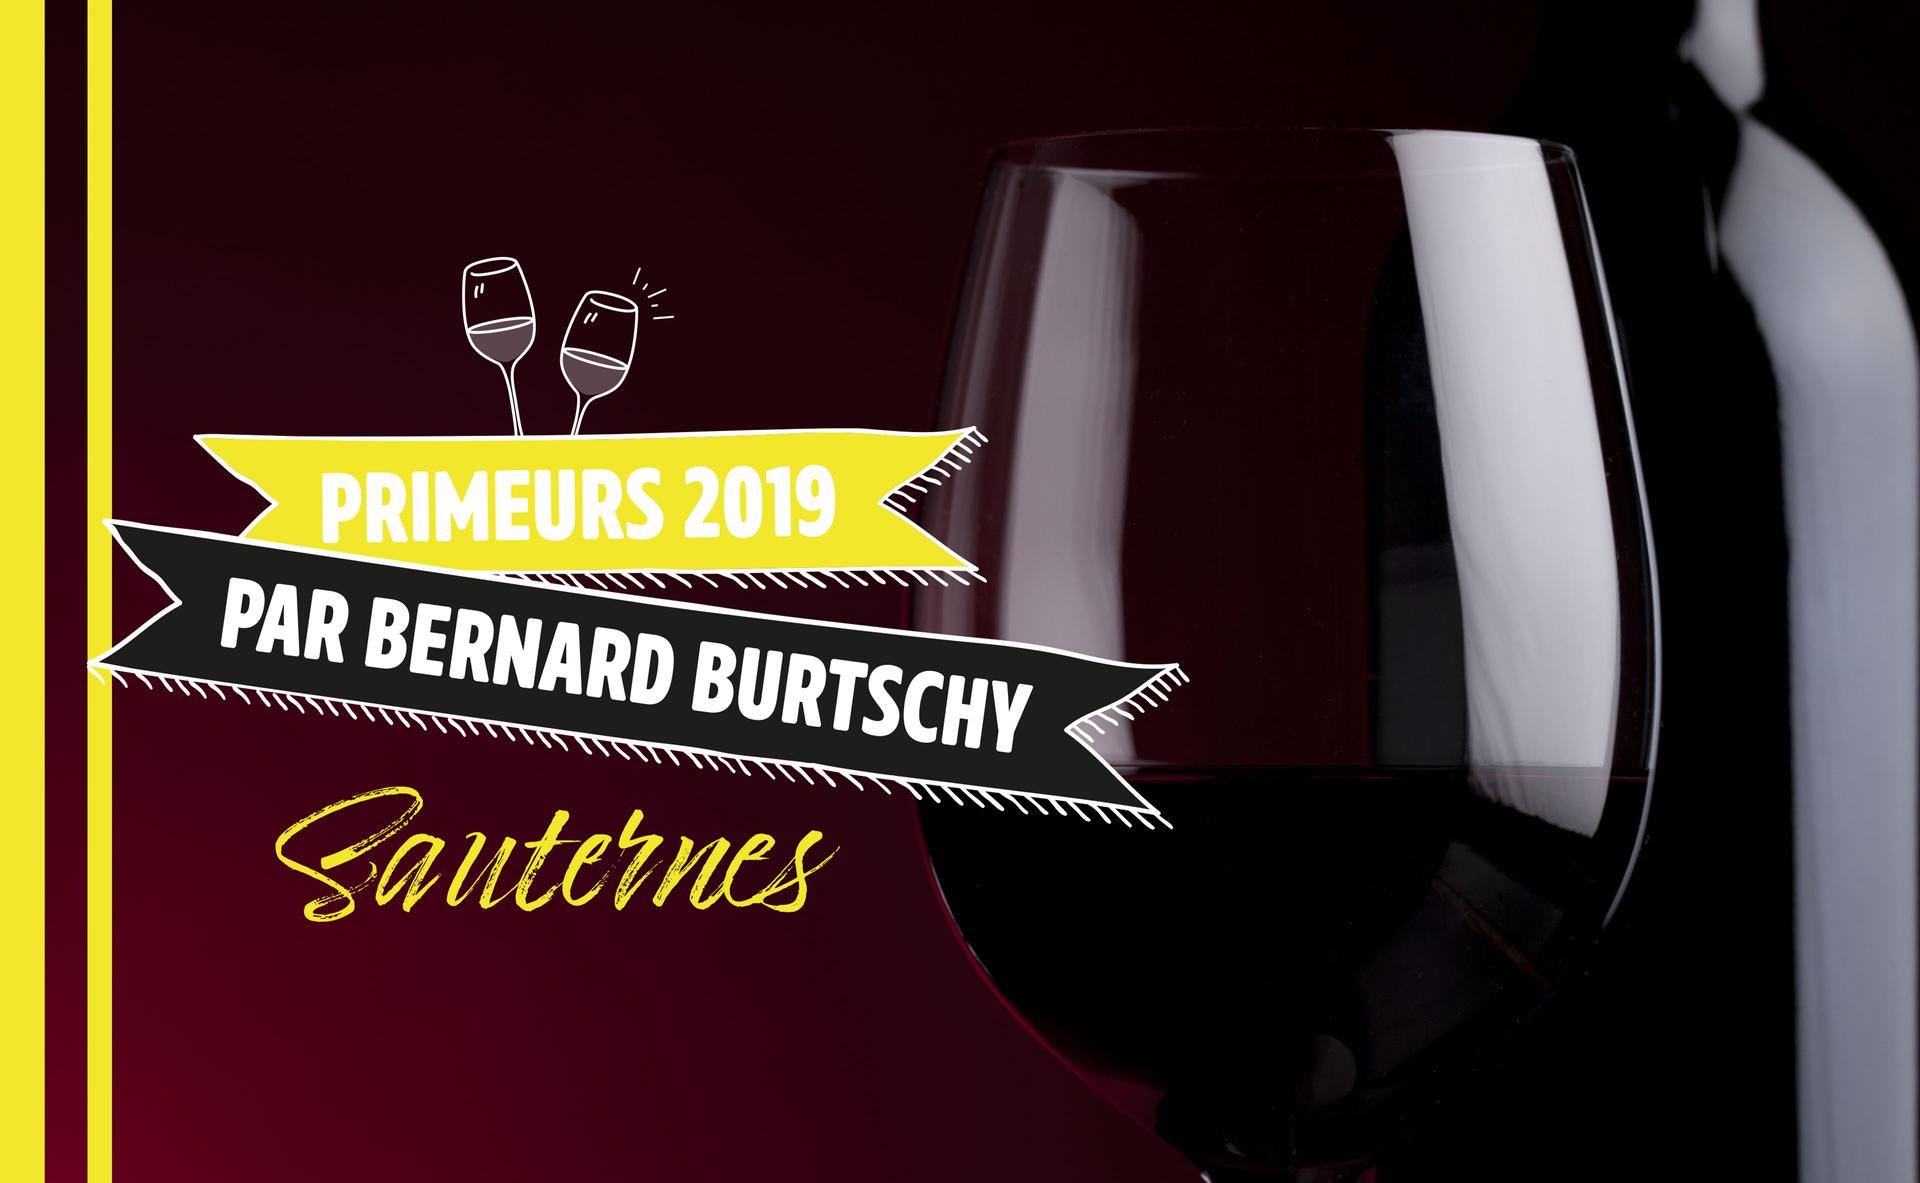 Barsac et Sauternes : les vins blancs secs et les liquoreux